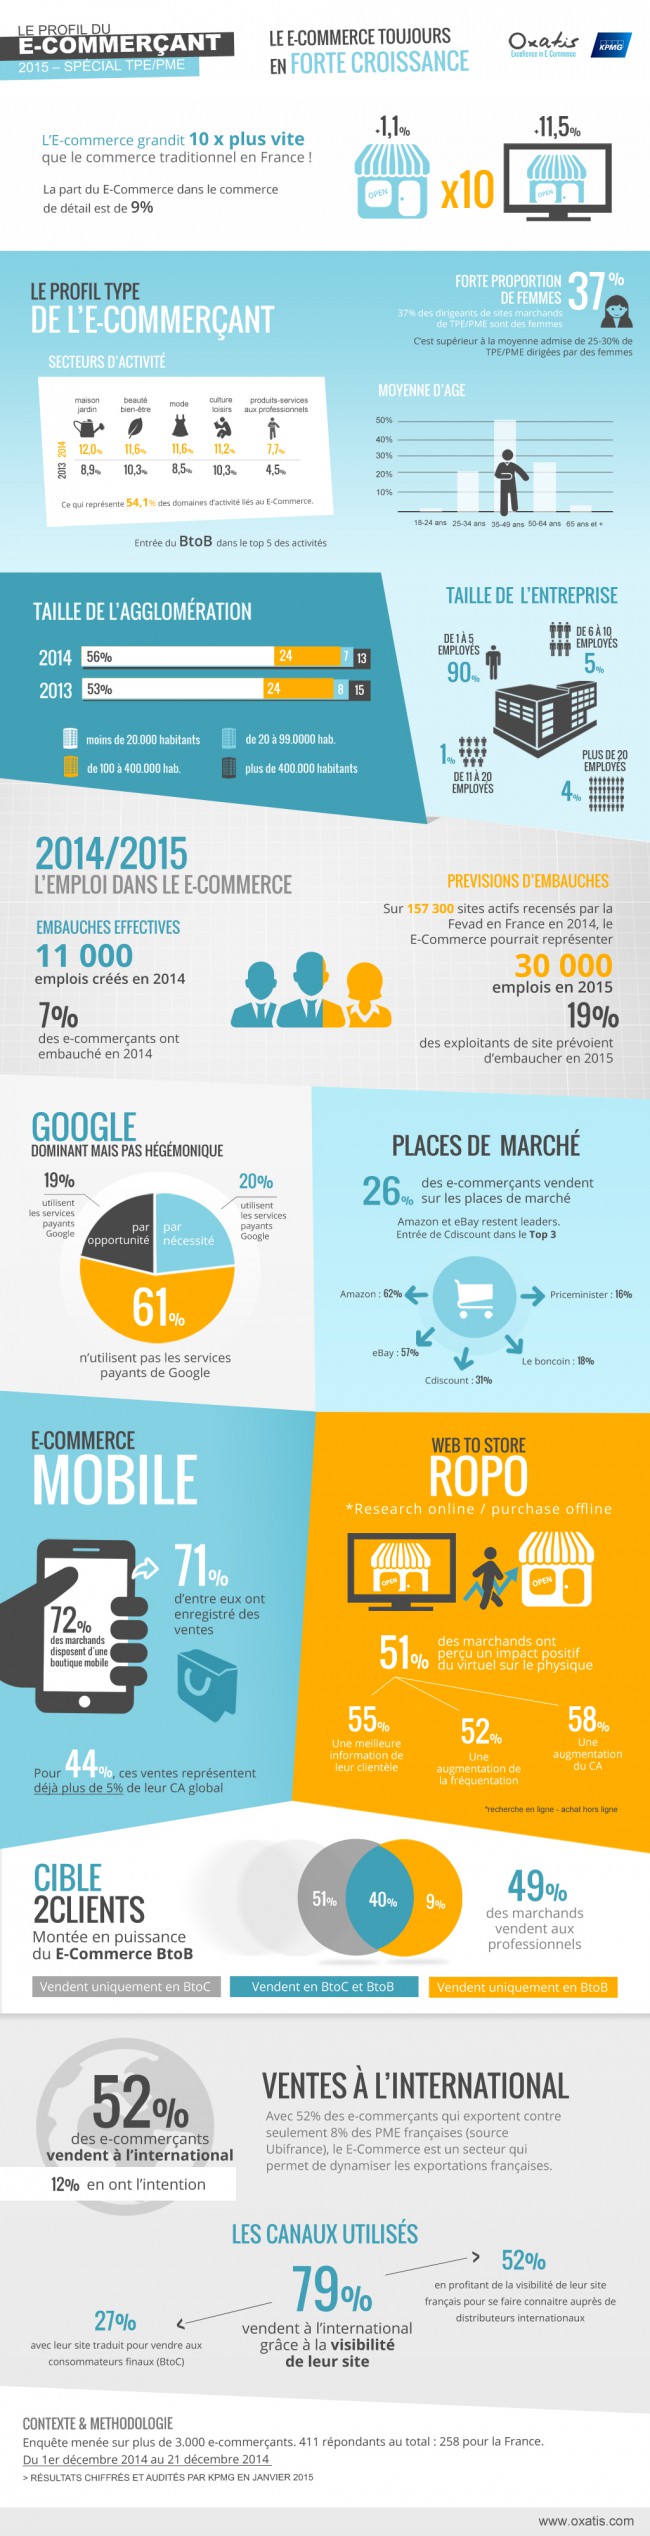 Infographie : le profil type de l'e-commerçant en 2015